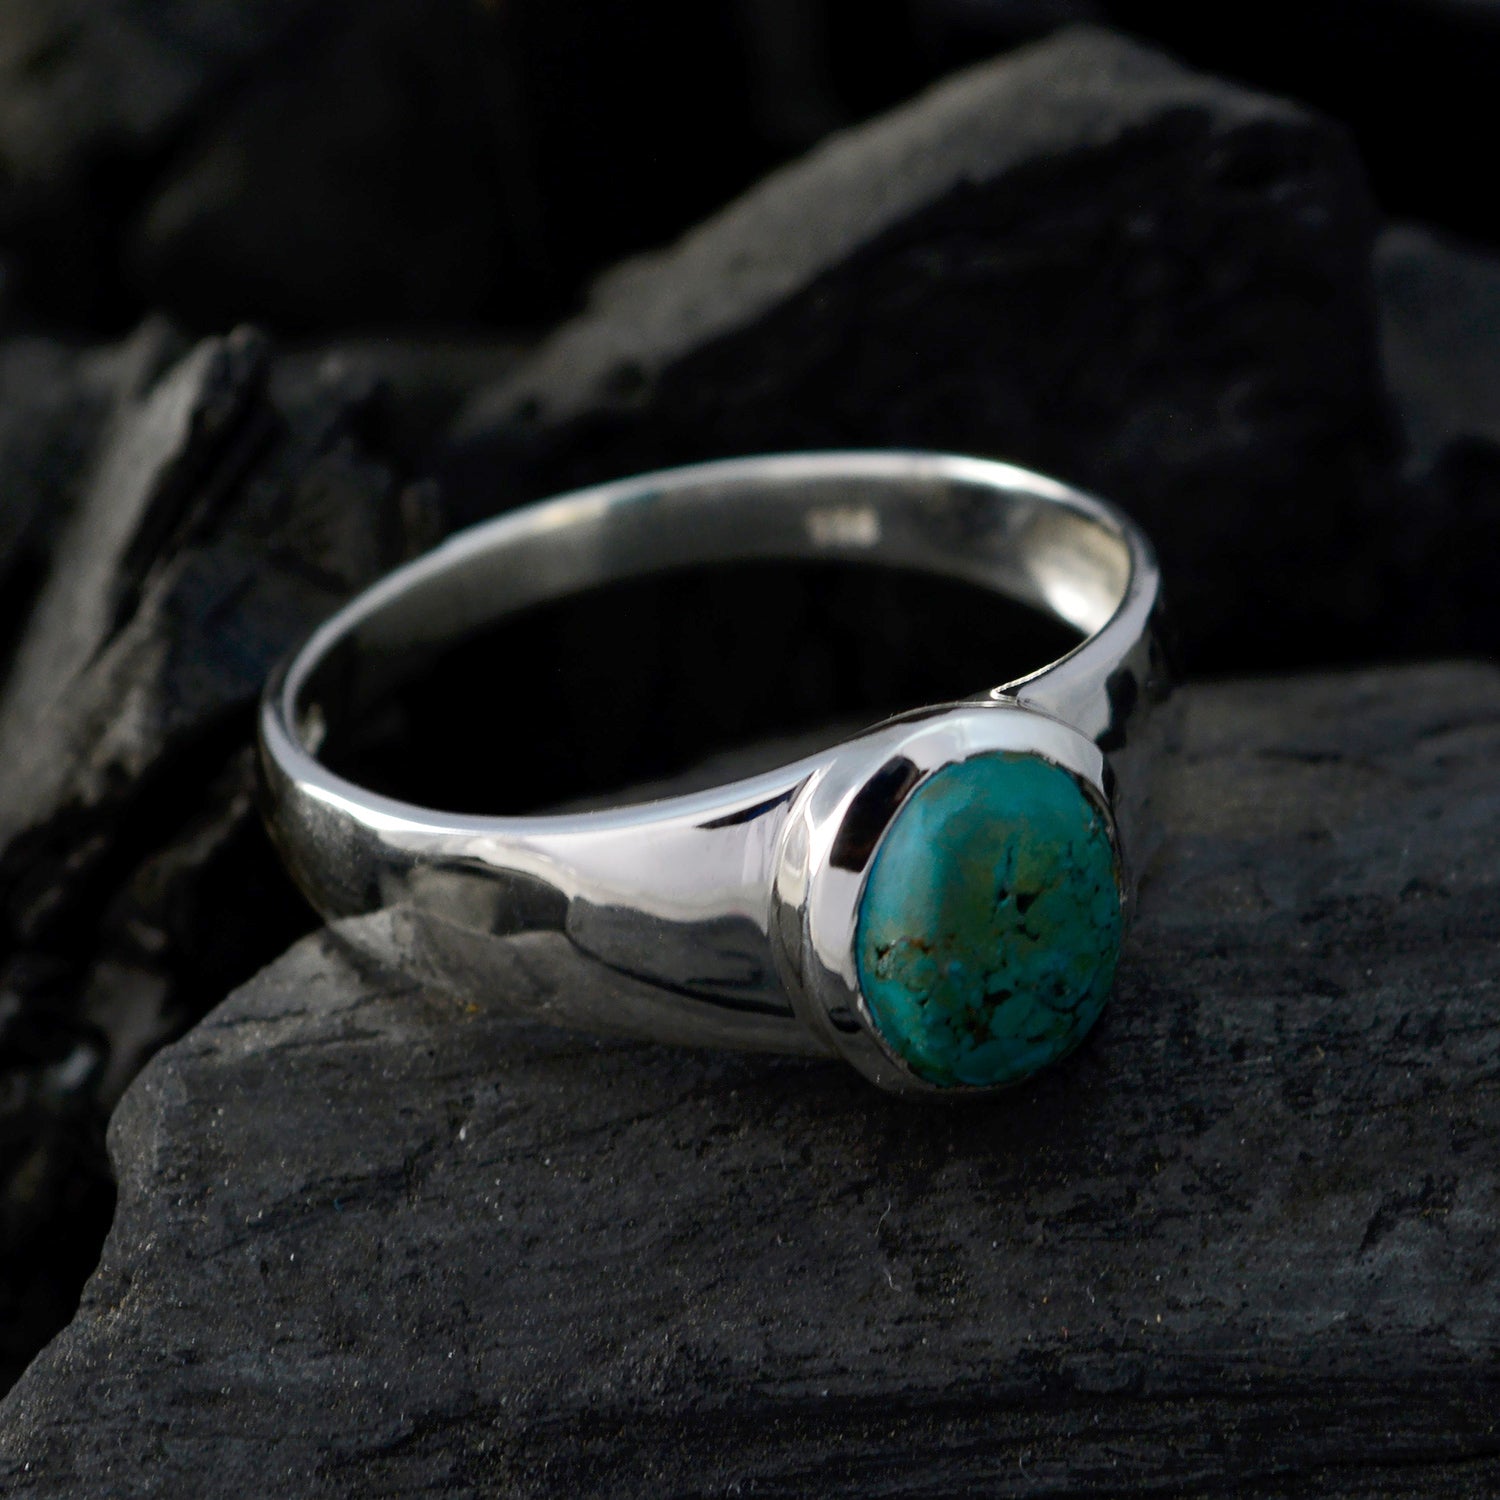 Handgemaakte edelsteen turquoise 925 zilveren ring Pandora sieradendoos